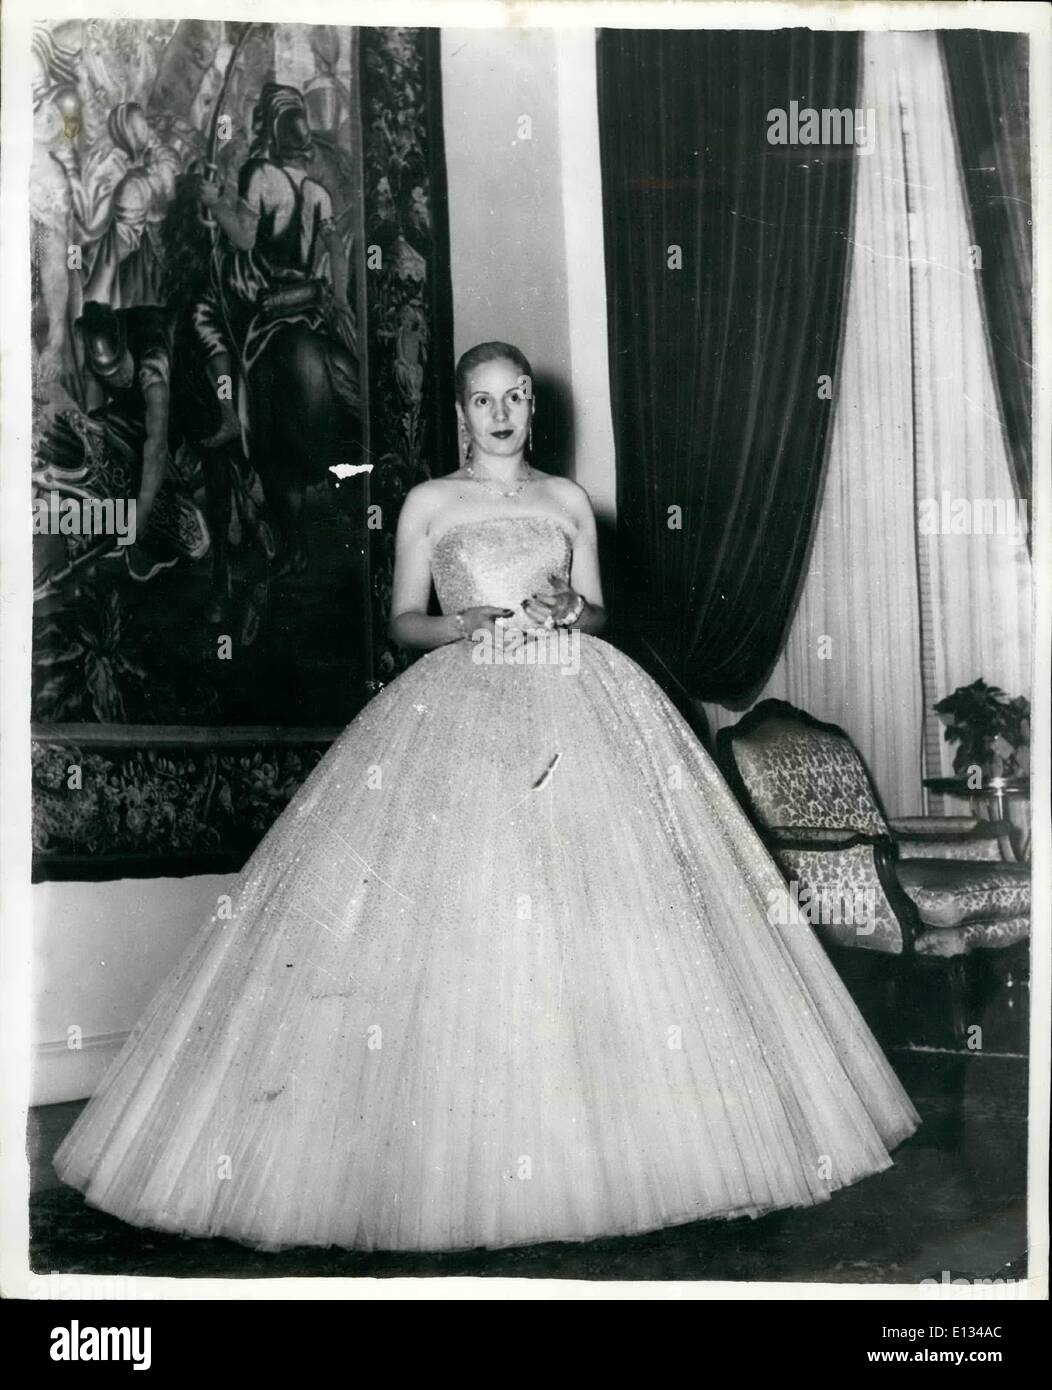 Febrero 28, 2012 - Muestra Fotográfica Keystone: Eva Perón, posa para la cámara en su gloriosa vestido de noche - cuando abandonó el palacio presidencial para el teatro. Foto de stock